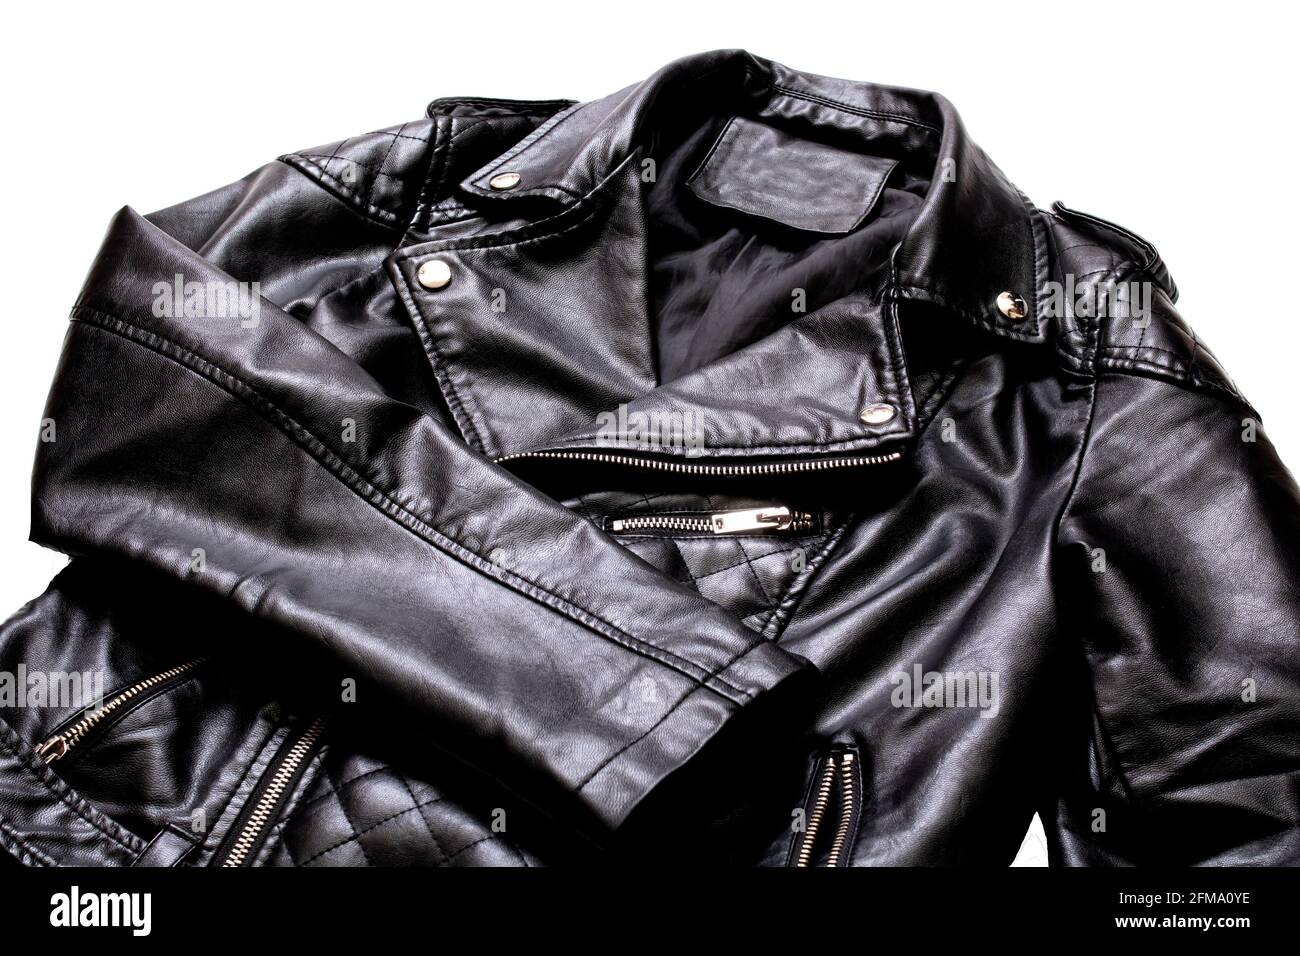 Black leather jacket isolated on white background close up Stock Photo